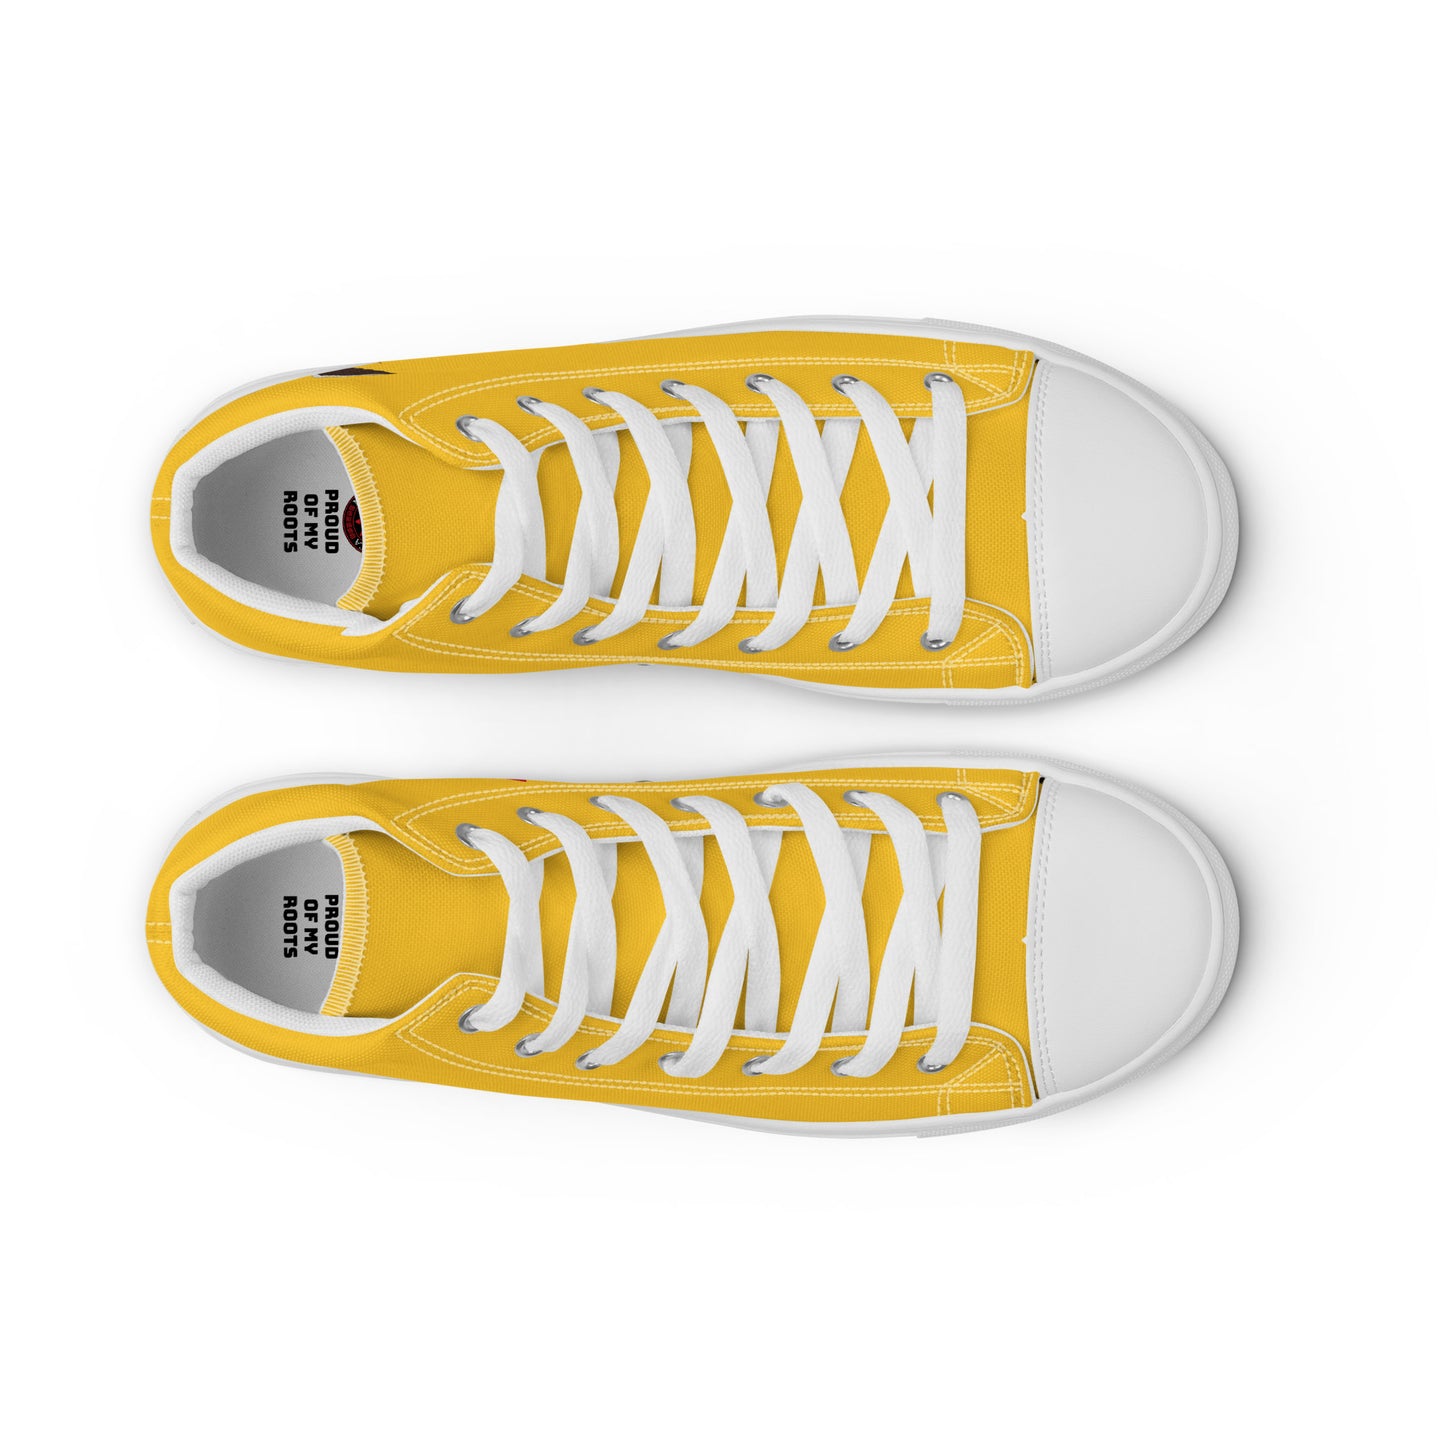 Ecuador - Men - Yellow - High top shoes